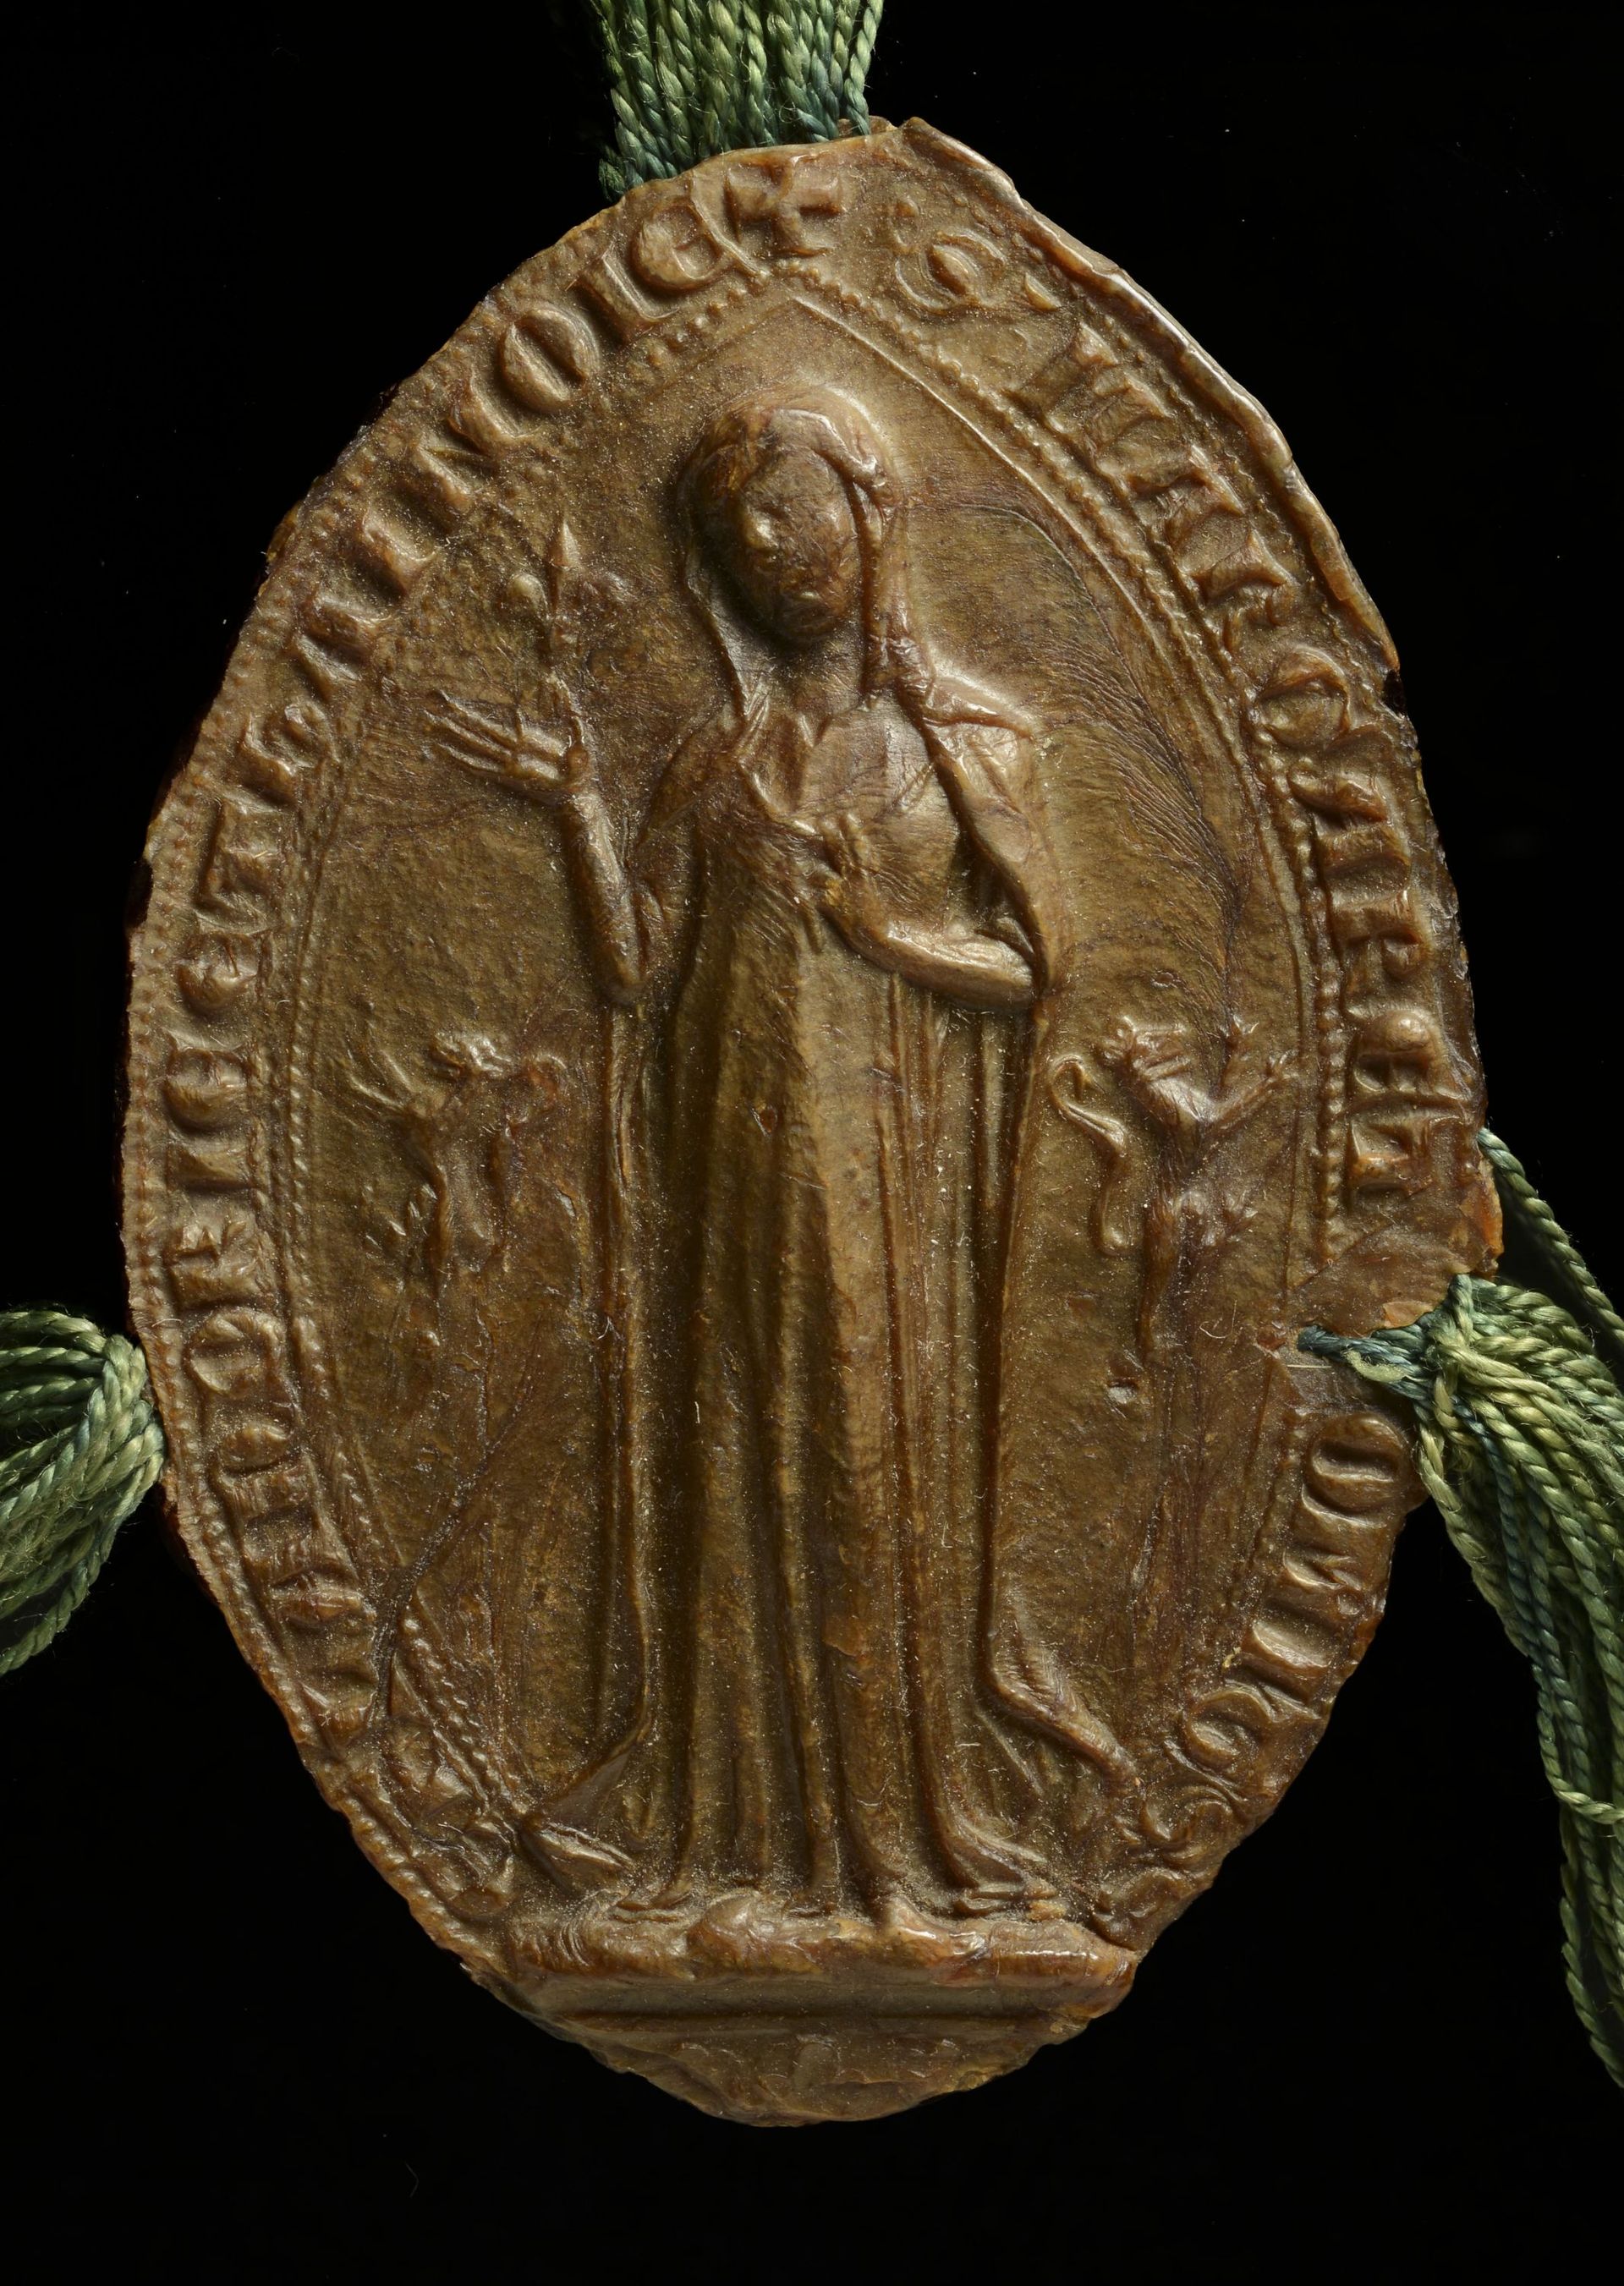 Un sceau pédestre de Marguerite de Constantinople avec une fleur de lis (sceau
appendu à une charte de 1278, Archives de l’État à Gand, Fonds Saint-Genois, n°240).